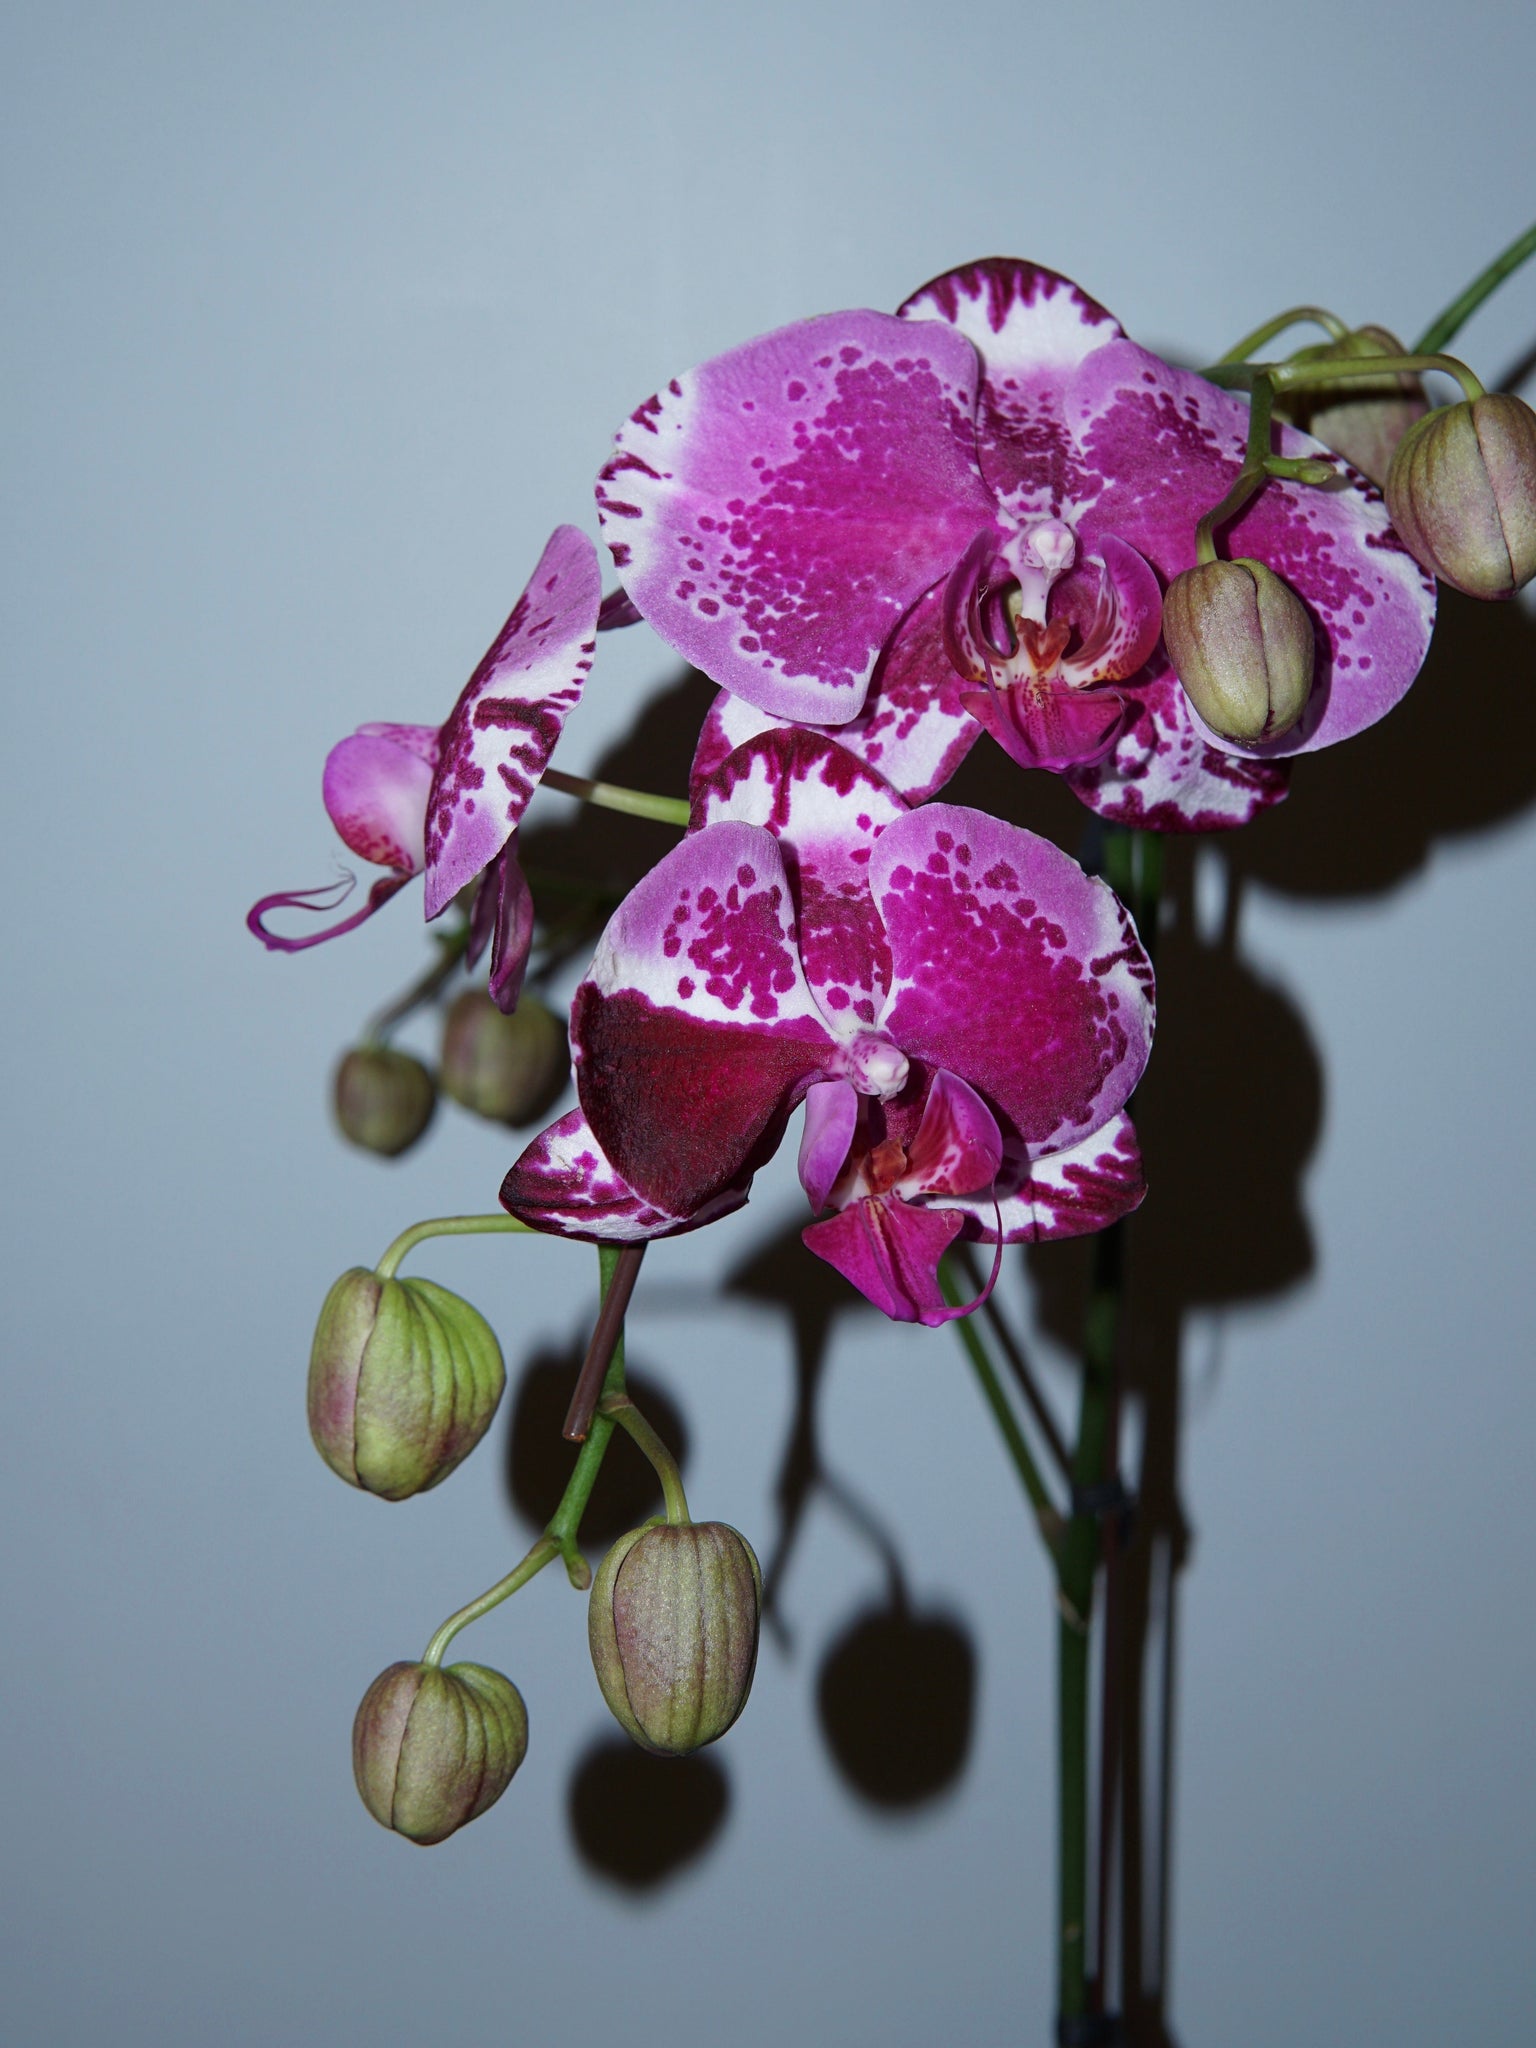 La Bomba Floristry Spotted Pink Phaleonopsis Orchid - Potted La Bomba Floristry Vancouver Canada